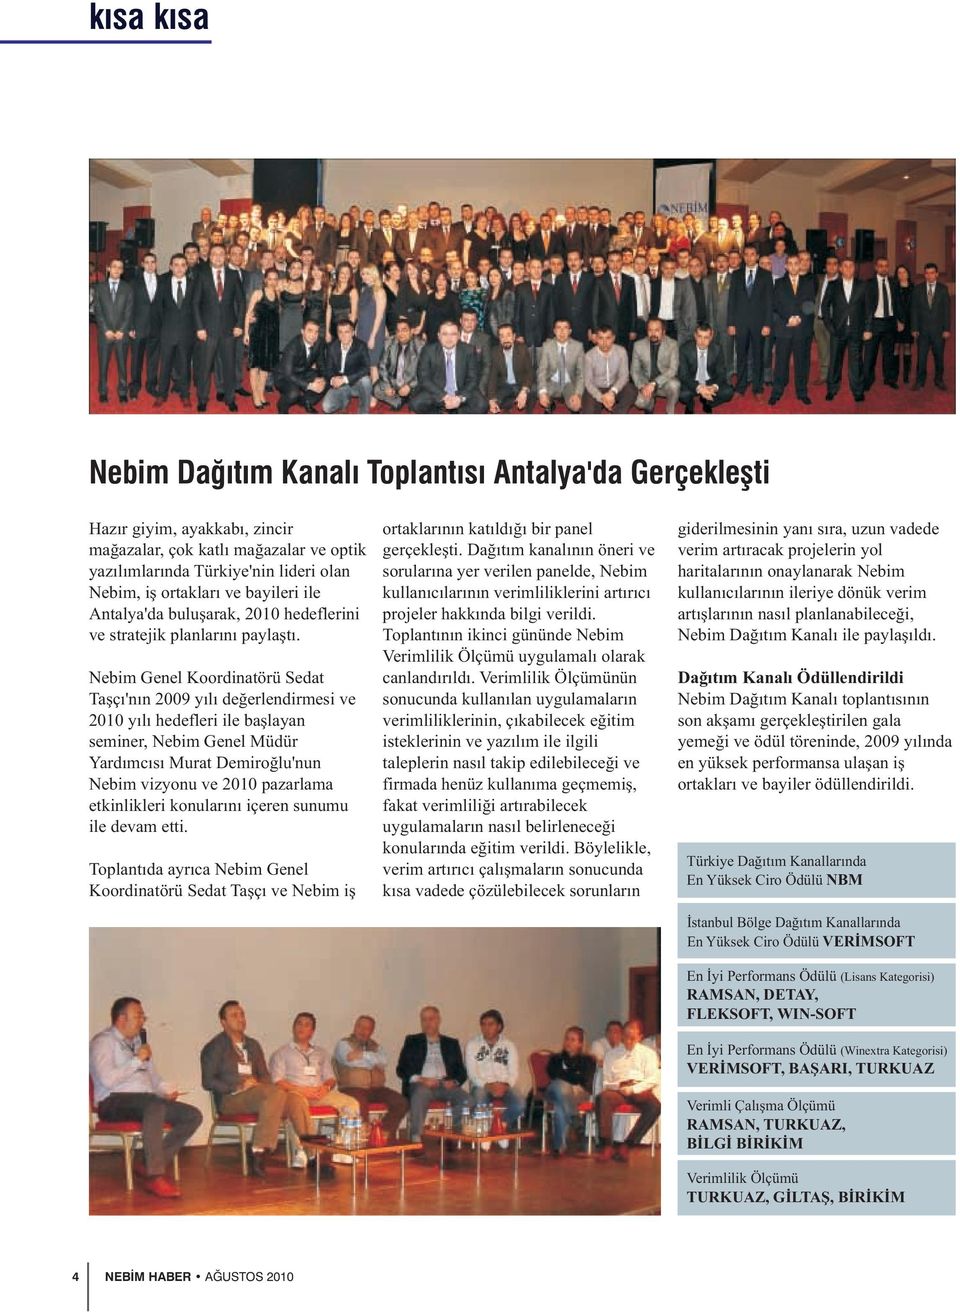 Nebim Genel Koordinatörü Sedat Taşçı'nın 2009 yılı değerlendirmesi ve 2010 yılı hedefleri ile başlayan seminer, Nebim Genel Müdür Yardımcısı Murat Demiroğlu'nun Nebim vizyonu ve 2010 pazarlama